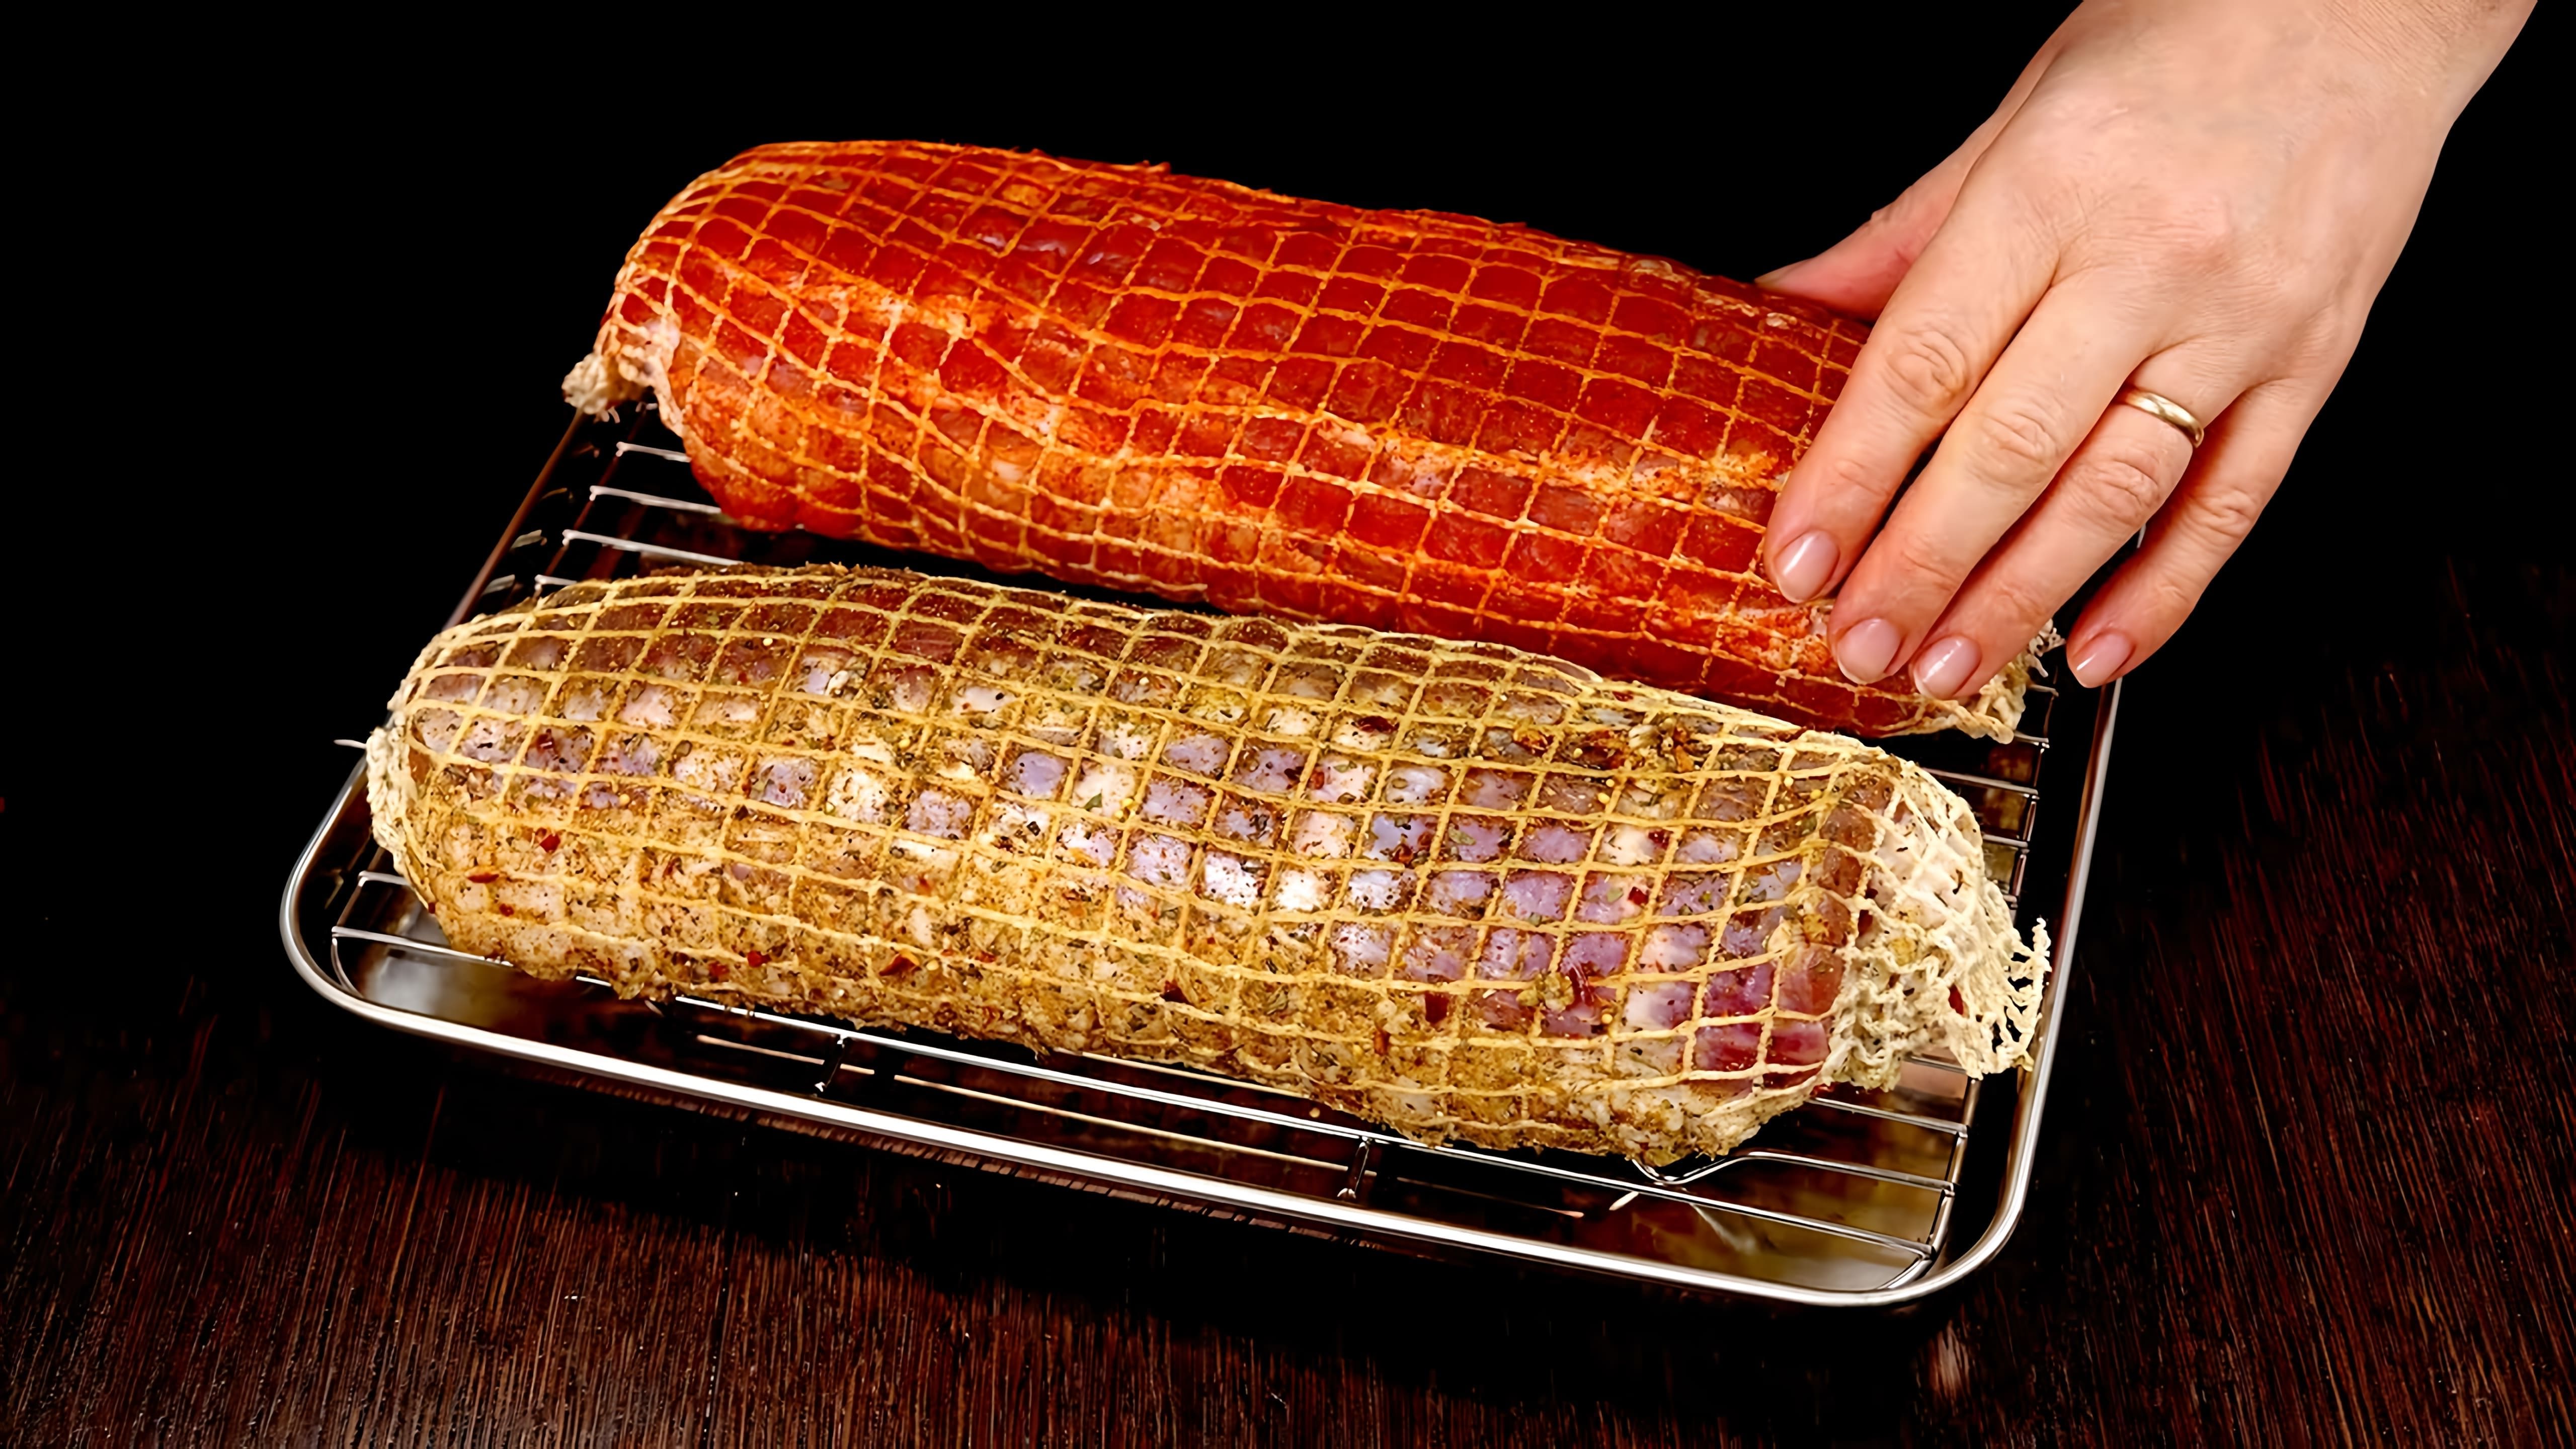 В данном видео демонстрируется процесс приготовления мясных закусок